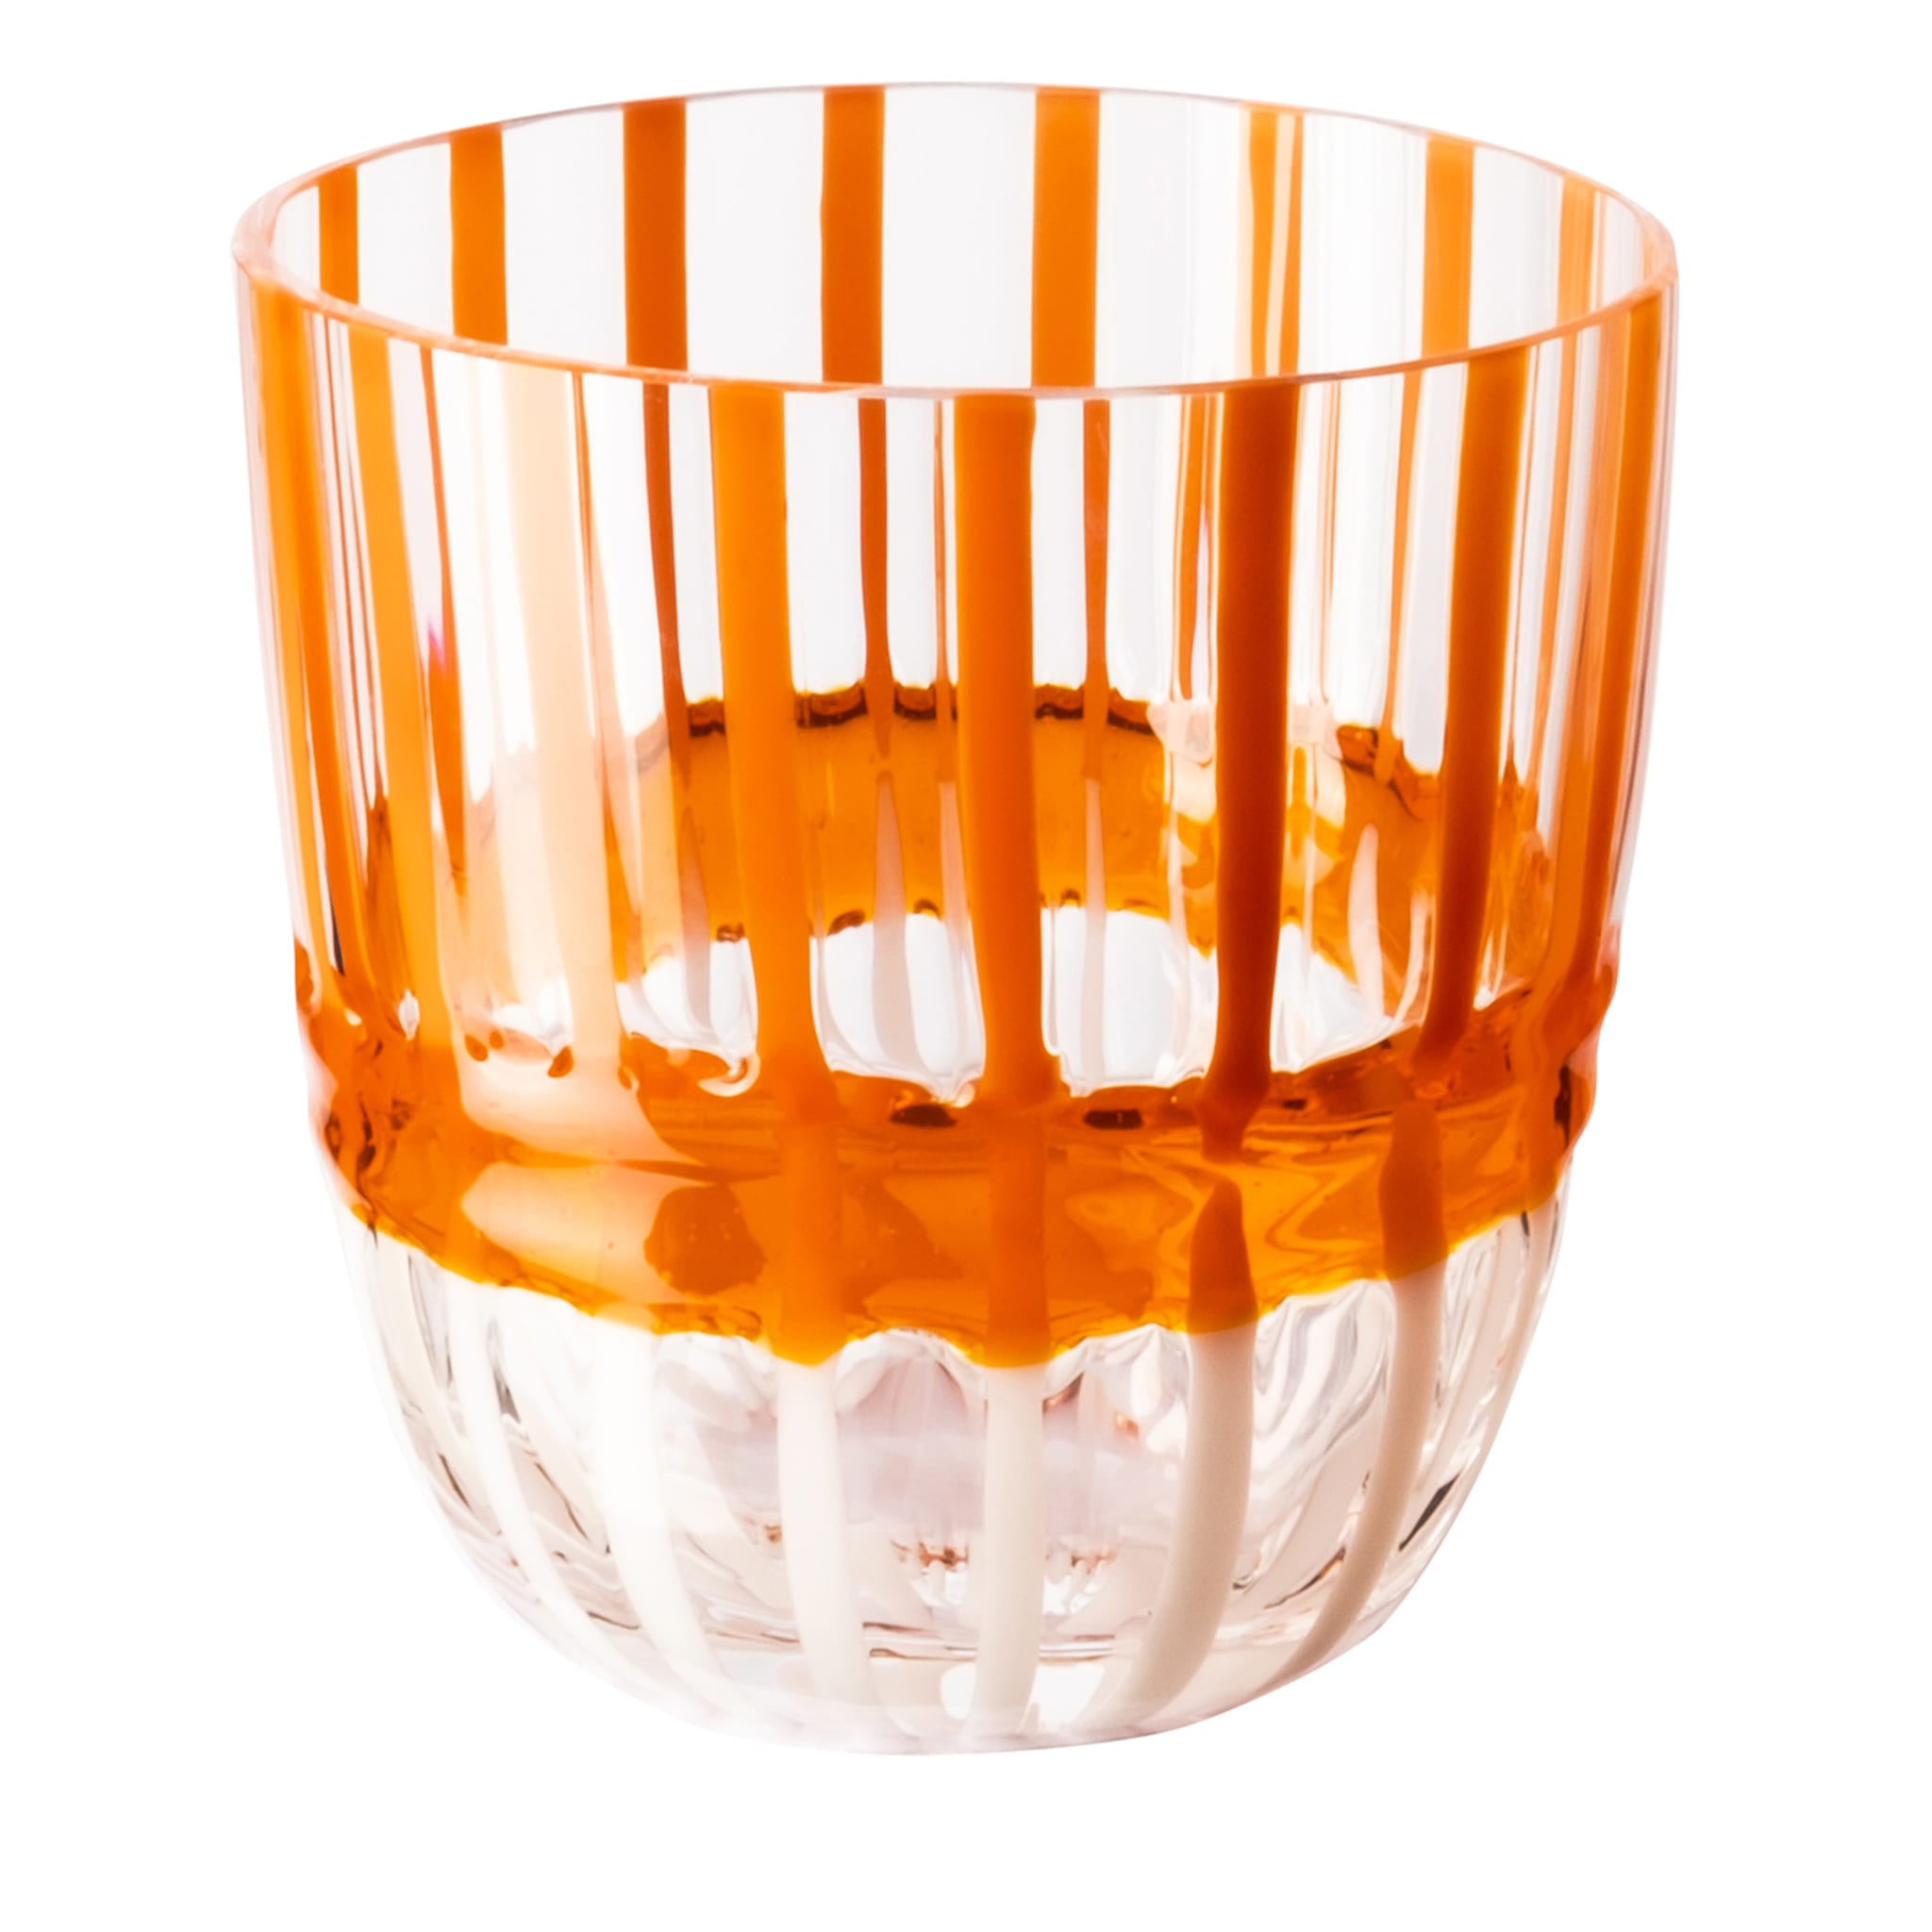 I Diversi White&Orange Striped Glass by Carlo Moretti - Main view